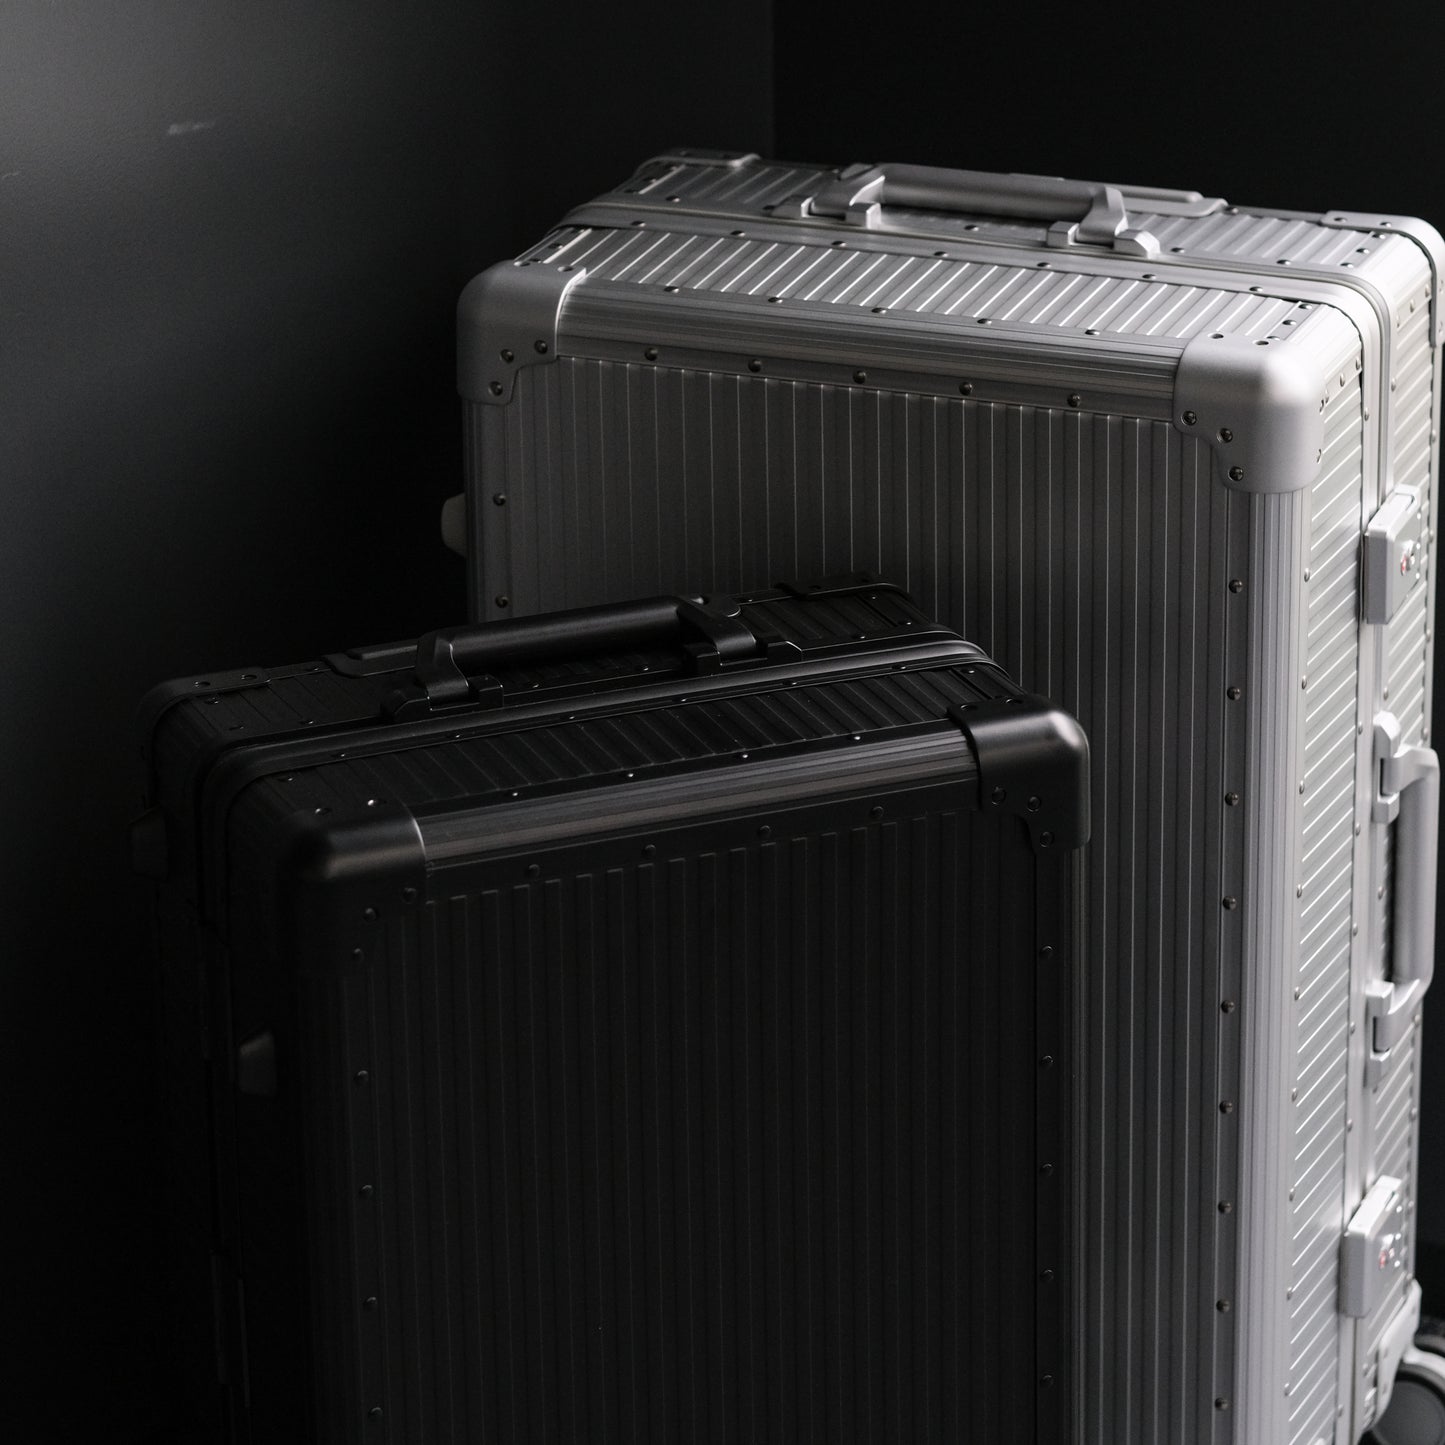 Stripe Aluminium Suitcase(Silver)